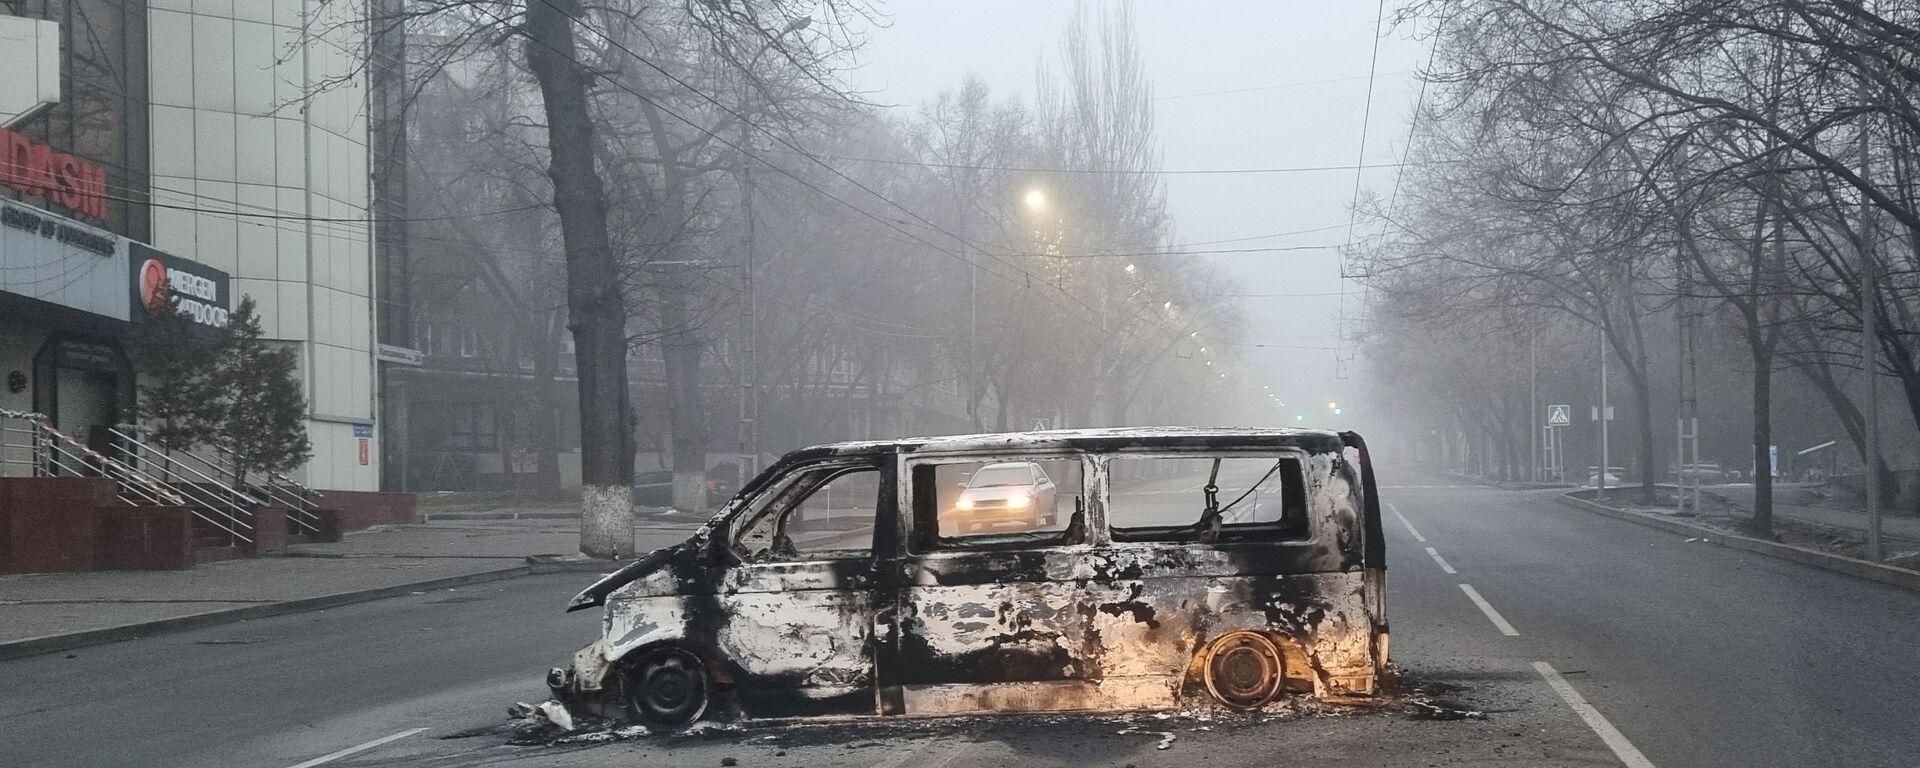 Автомобиль, сожженный во время протестов, вызванных повышением цен на топливо, на дороге в Алматы - Sputnik Lietuva, 1920, 10.01.2022